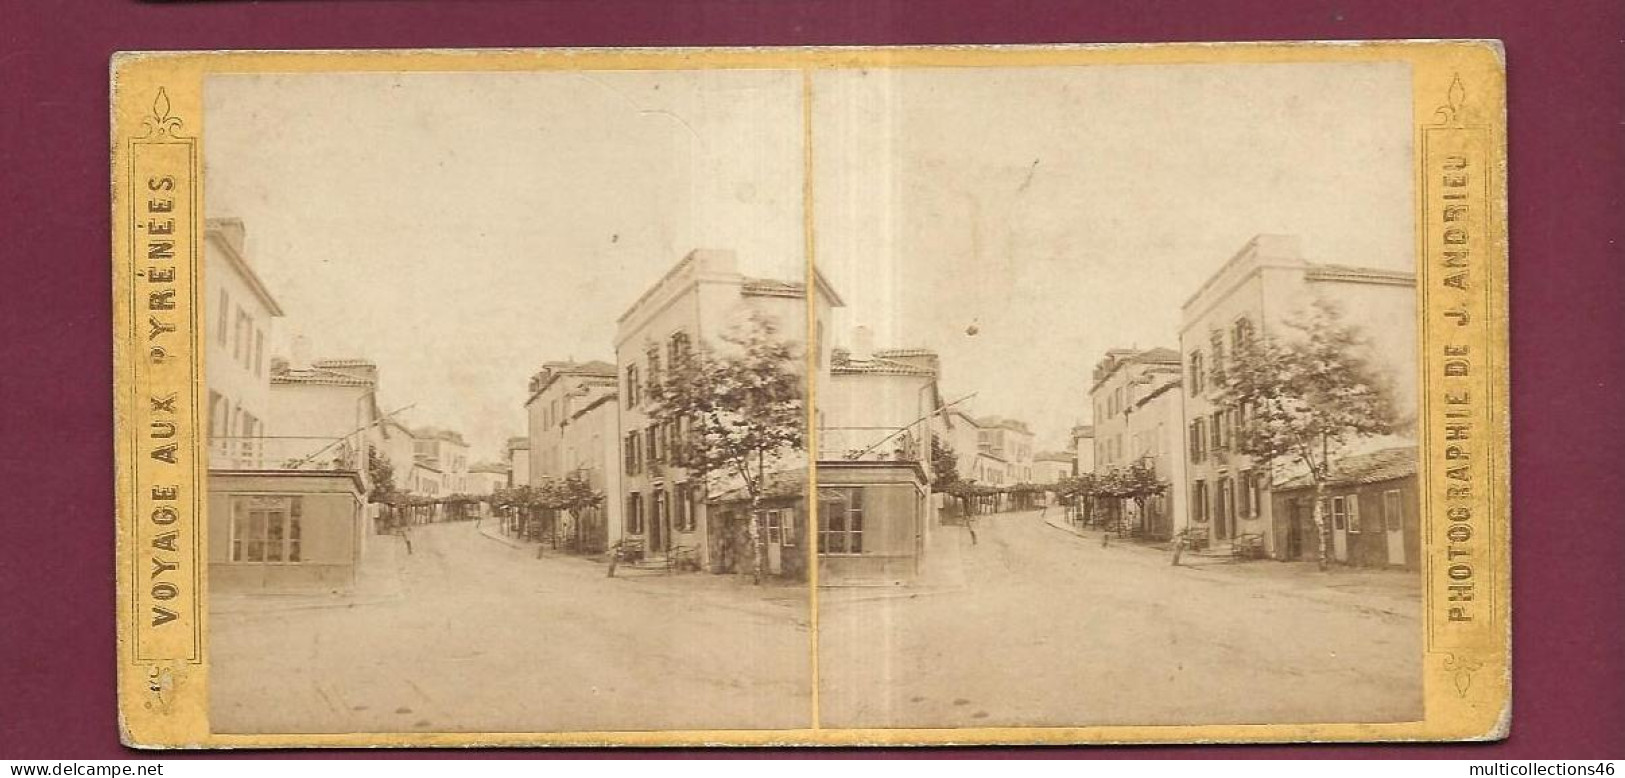 190424 - PHOTO STEREO PAPIER - VOYAGE AUX PYRENEES J ANDRIEU PARIS - BIARRITZ Rue Du Port Vieux - Stereoscopic